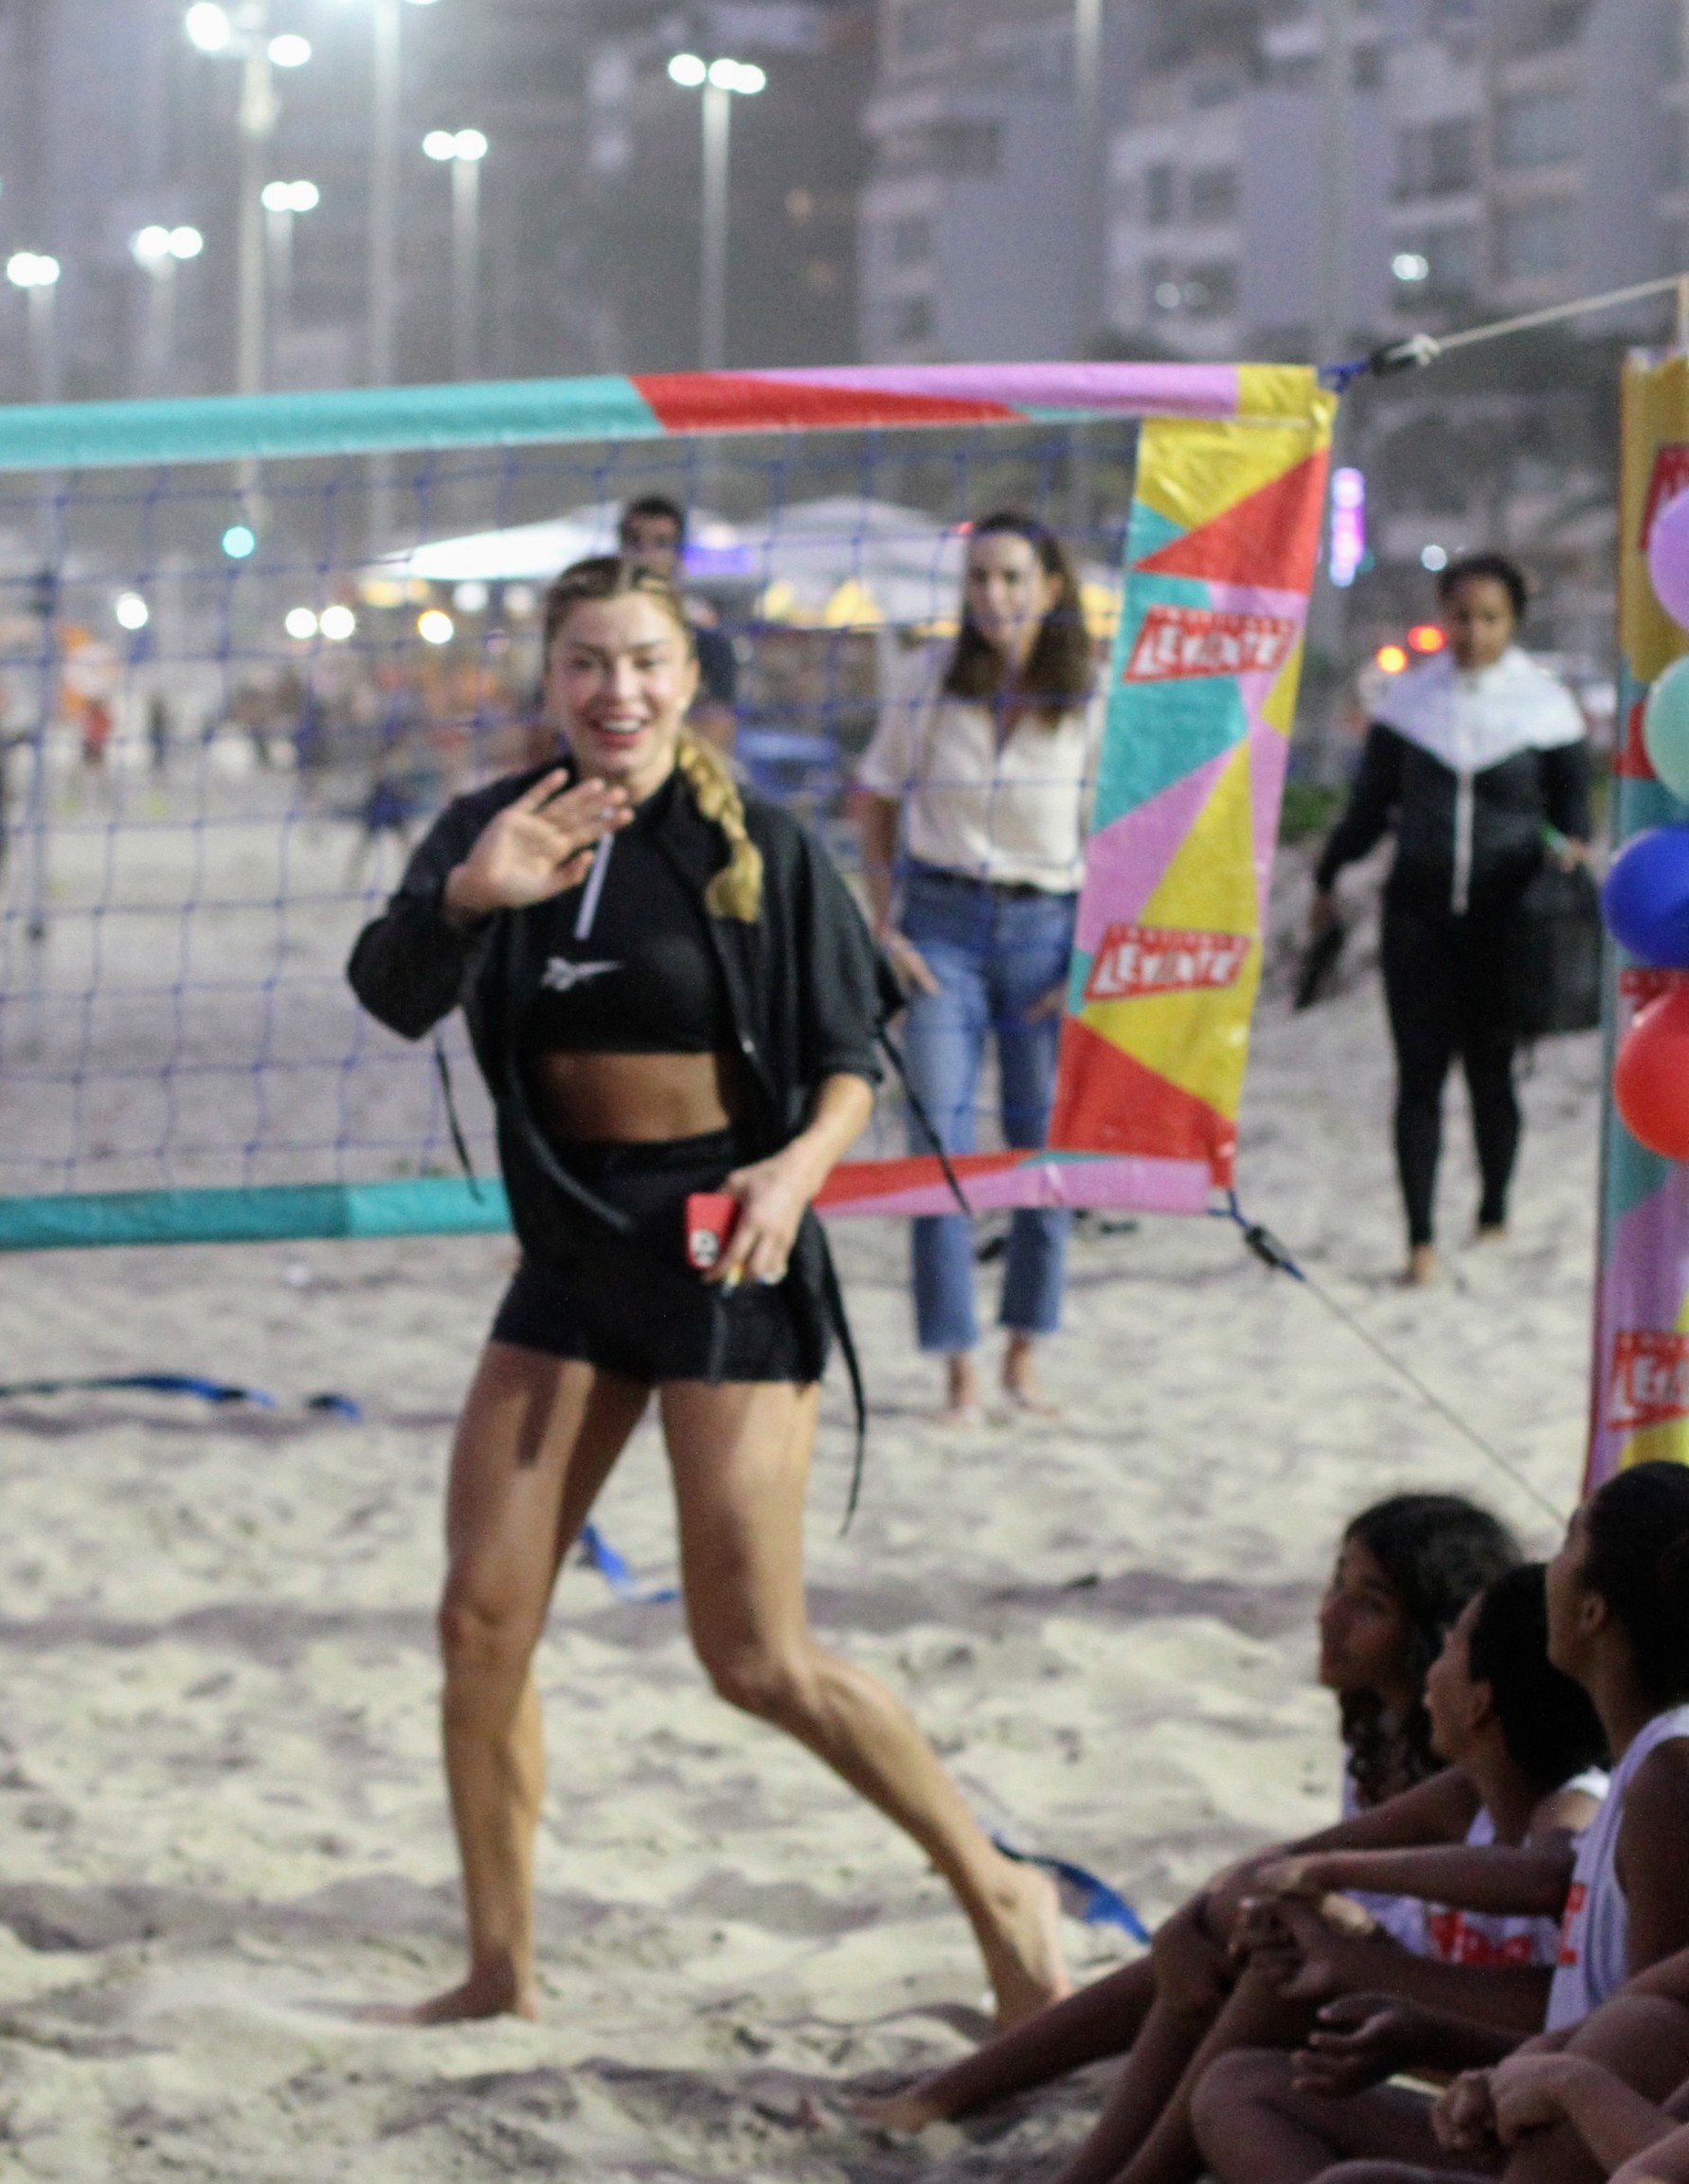 Grazi Massafera participa de evento filantrópico em praia do Rio de Janeiro (Foto: Dan Delmiro/AgNews)